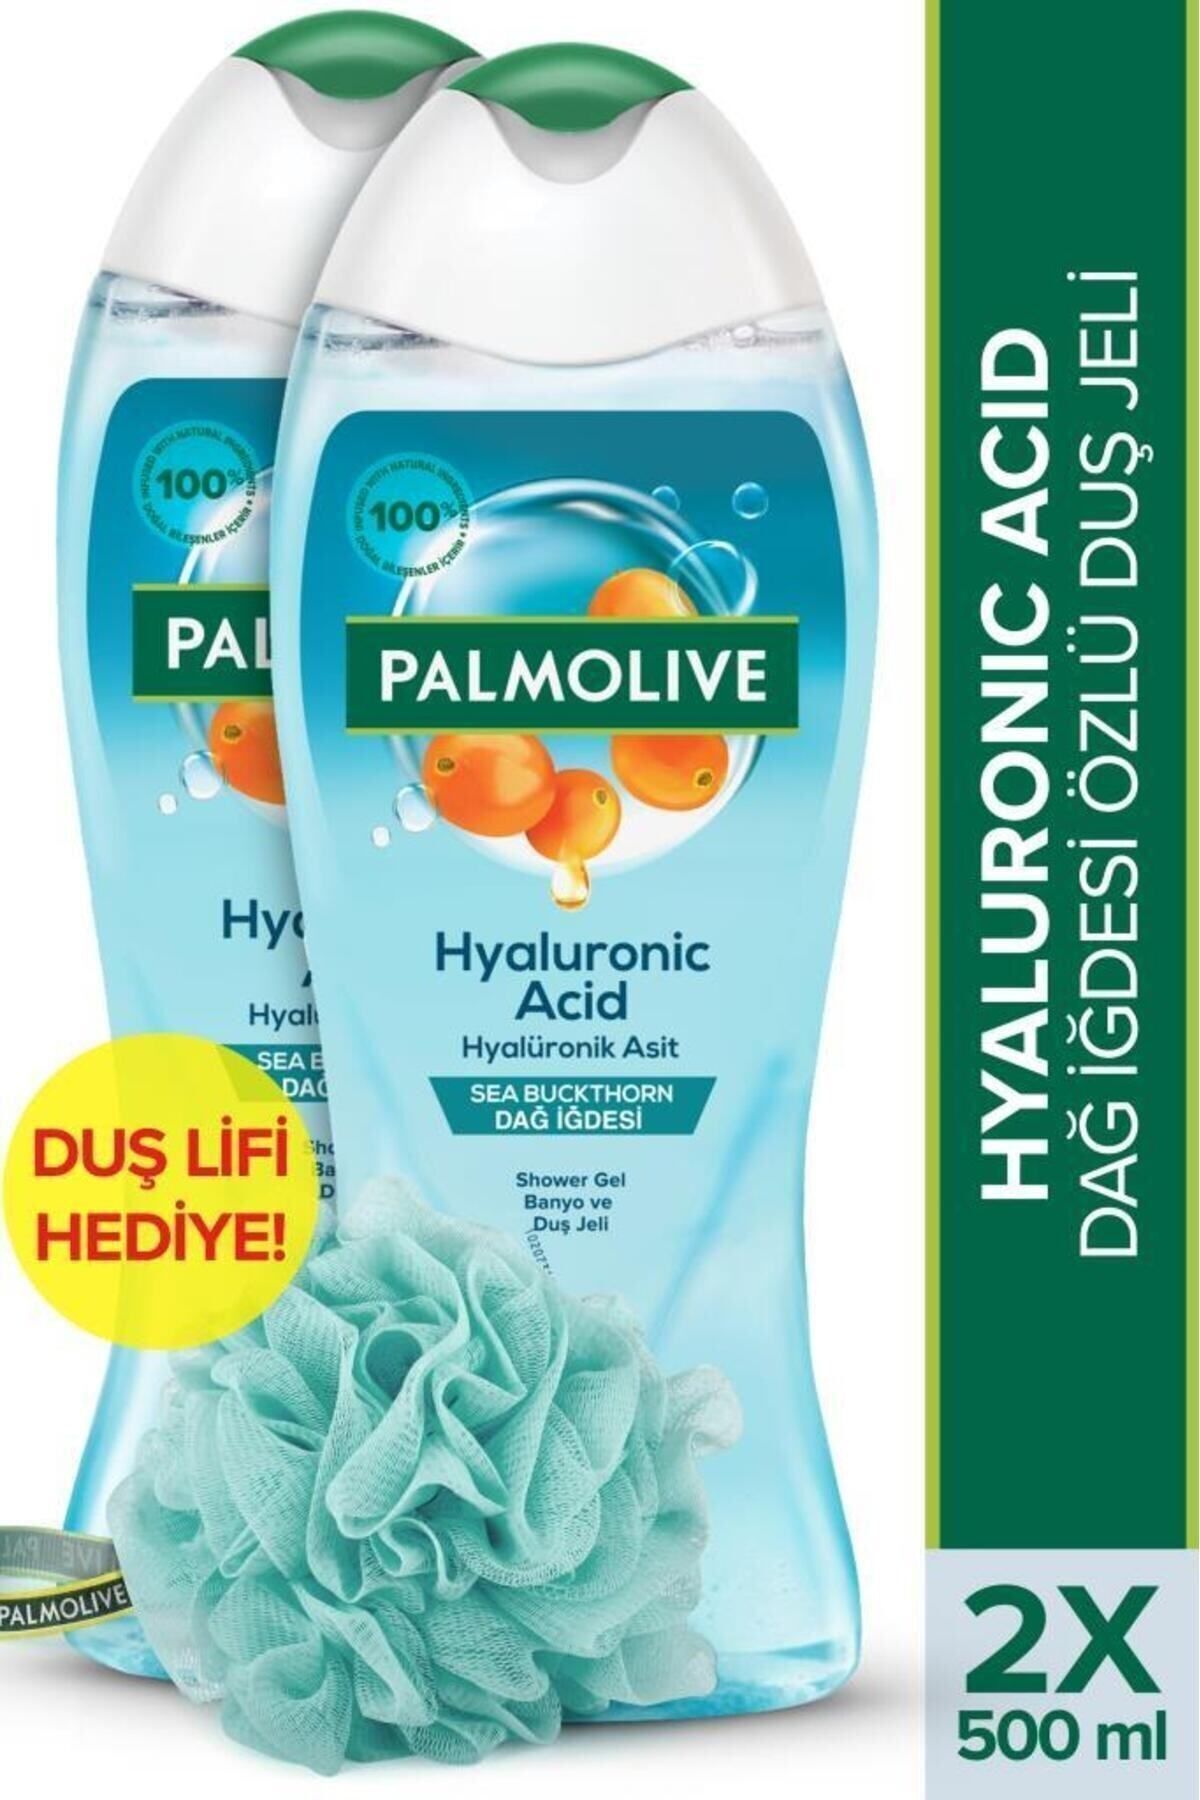 Palmolive Hyaluronic Acid Doğal Dağ İdesi Özlü Banyo ve Duş Jeli 500 ml x2 Adet + Duş Lifi Hediye